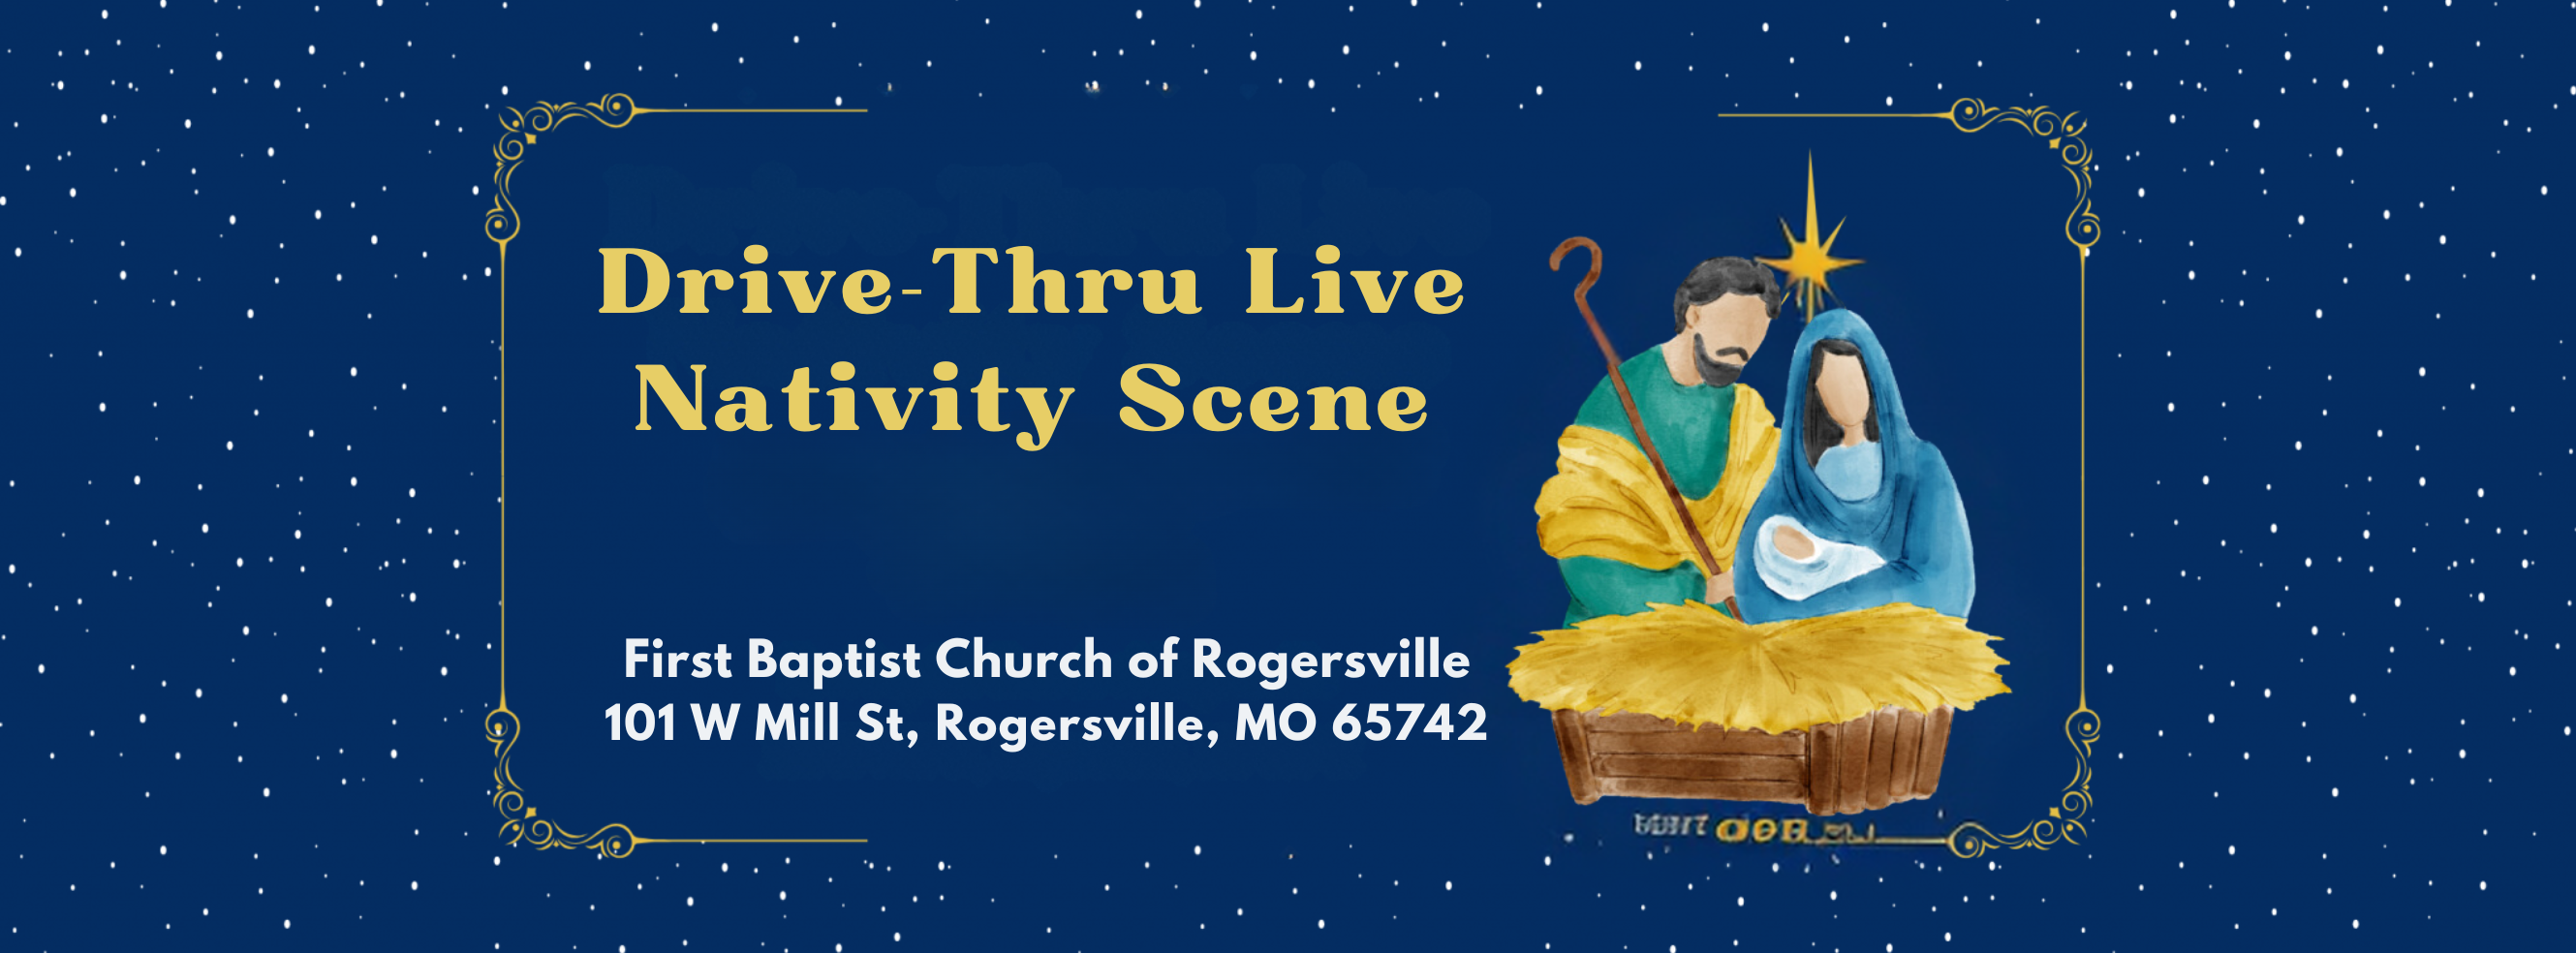 Drive-Thru Live Nativity Scene